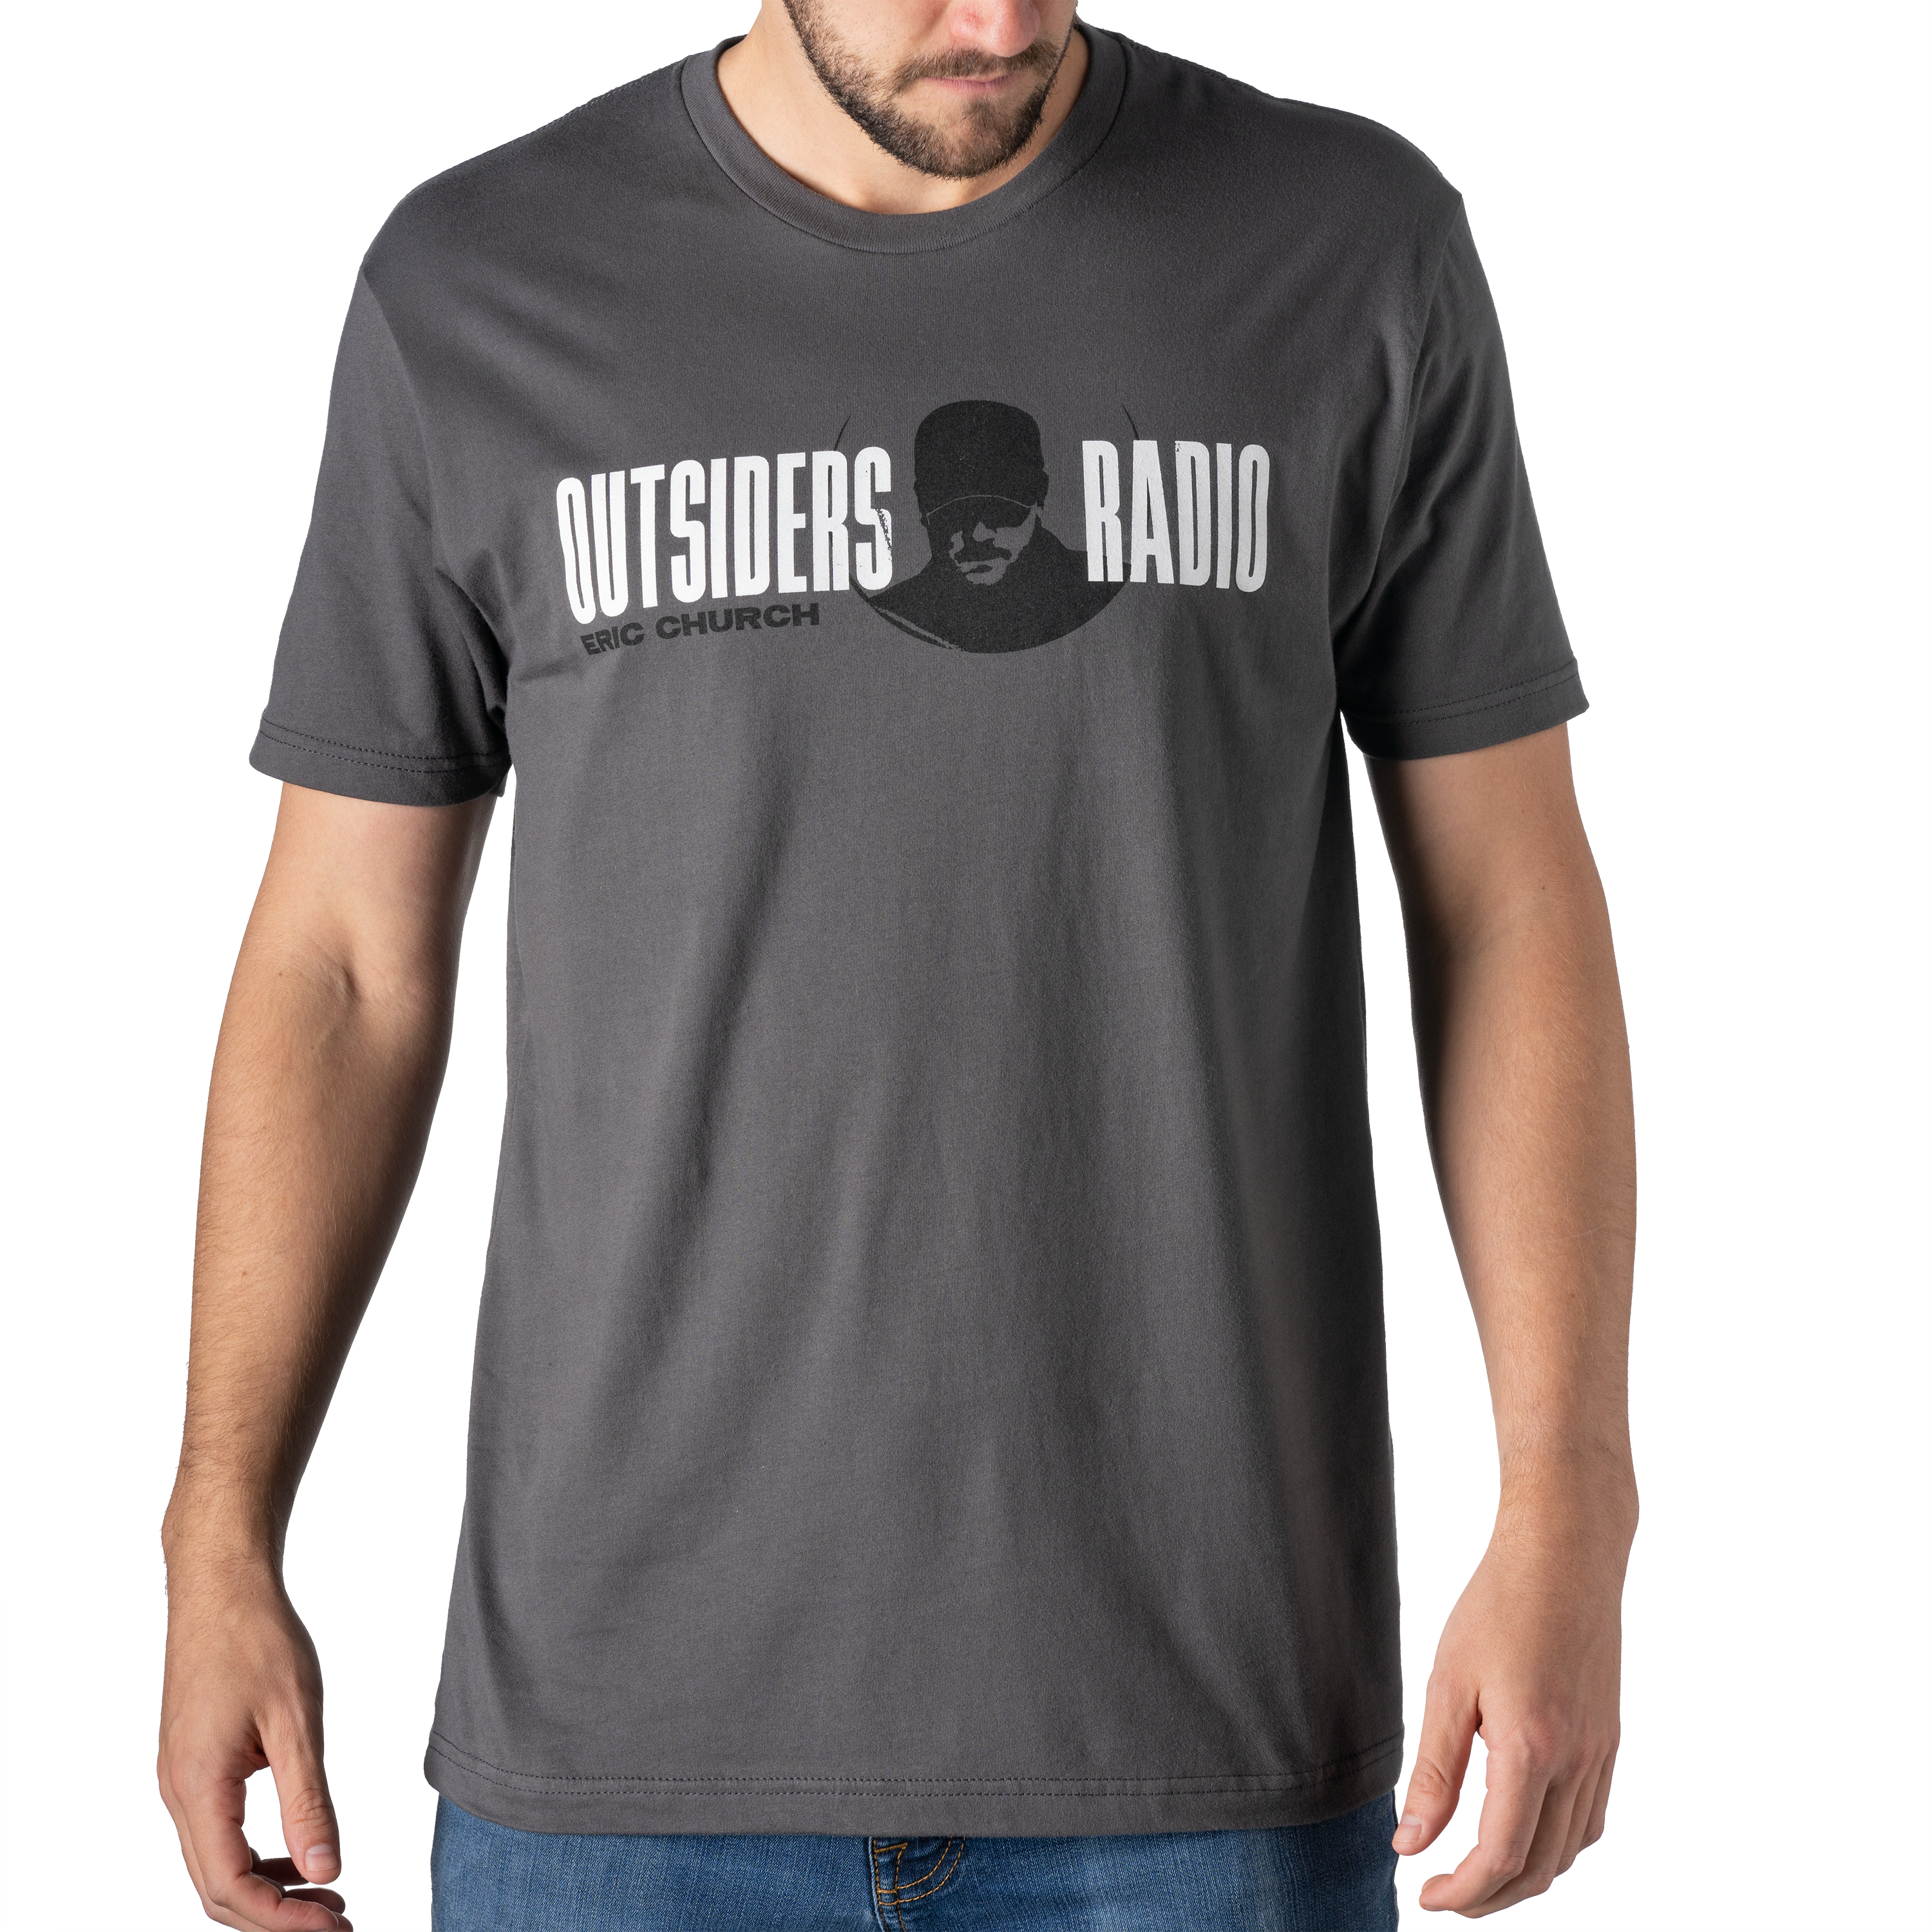 Outsiders Radio T-Shirt